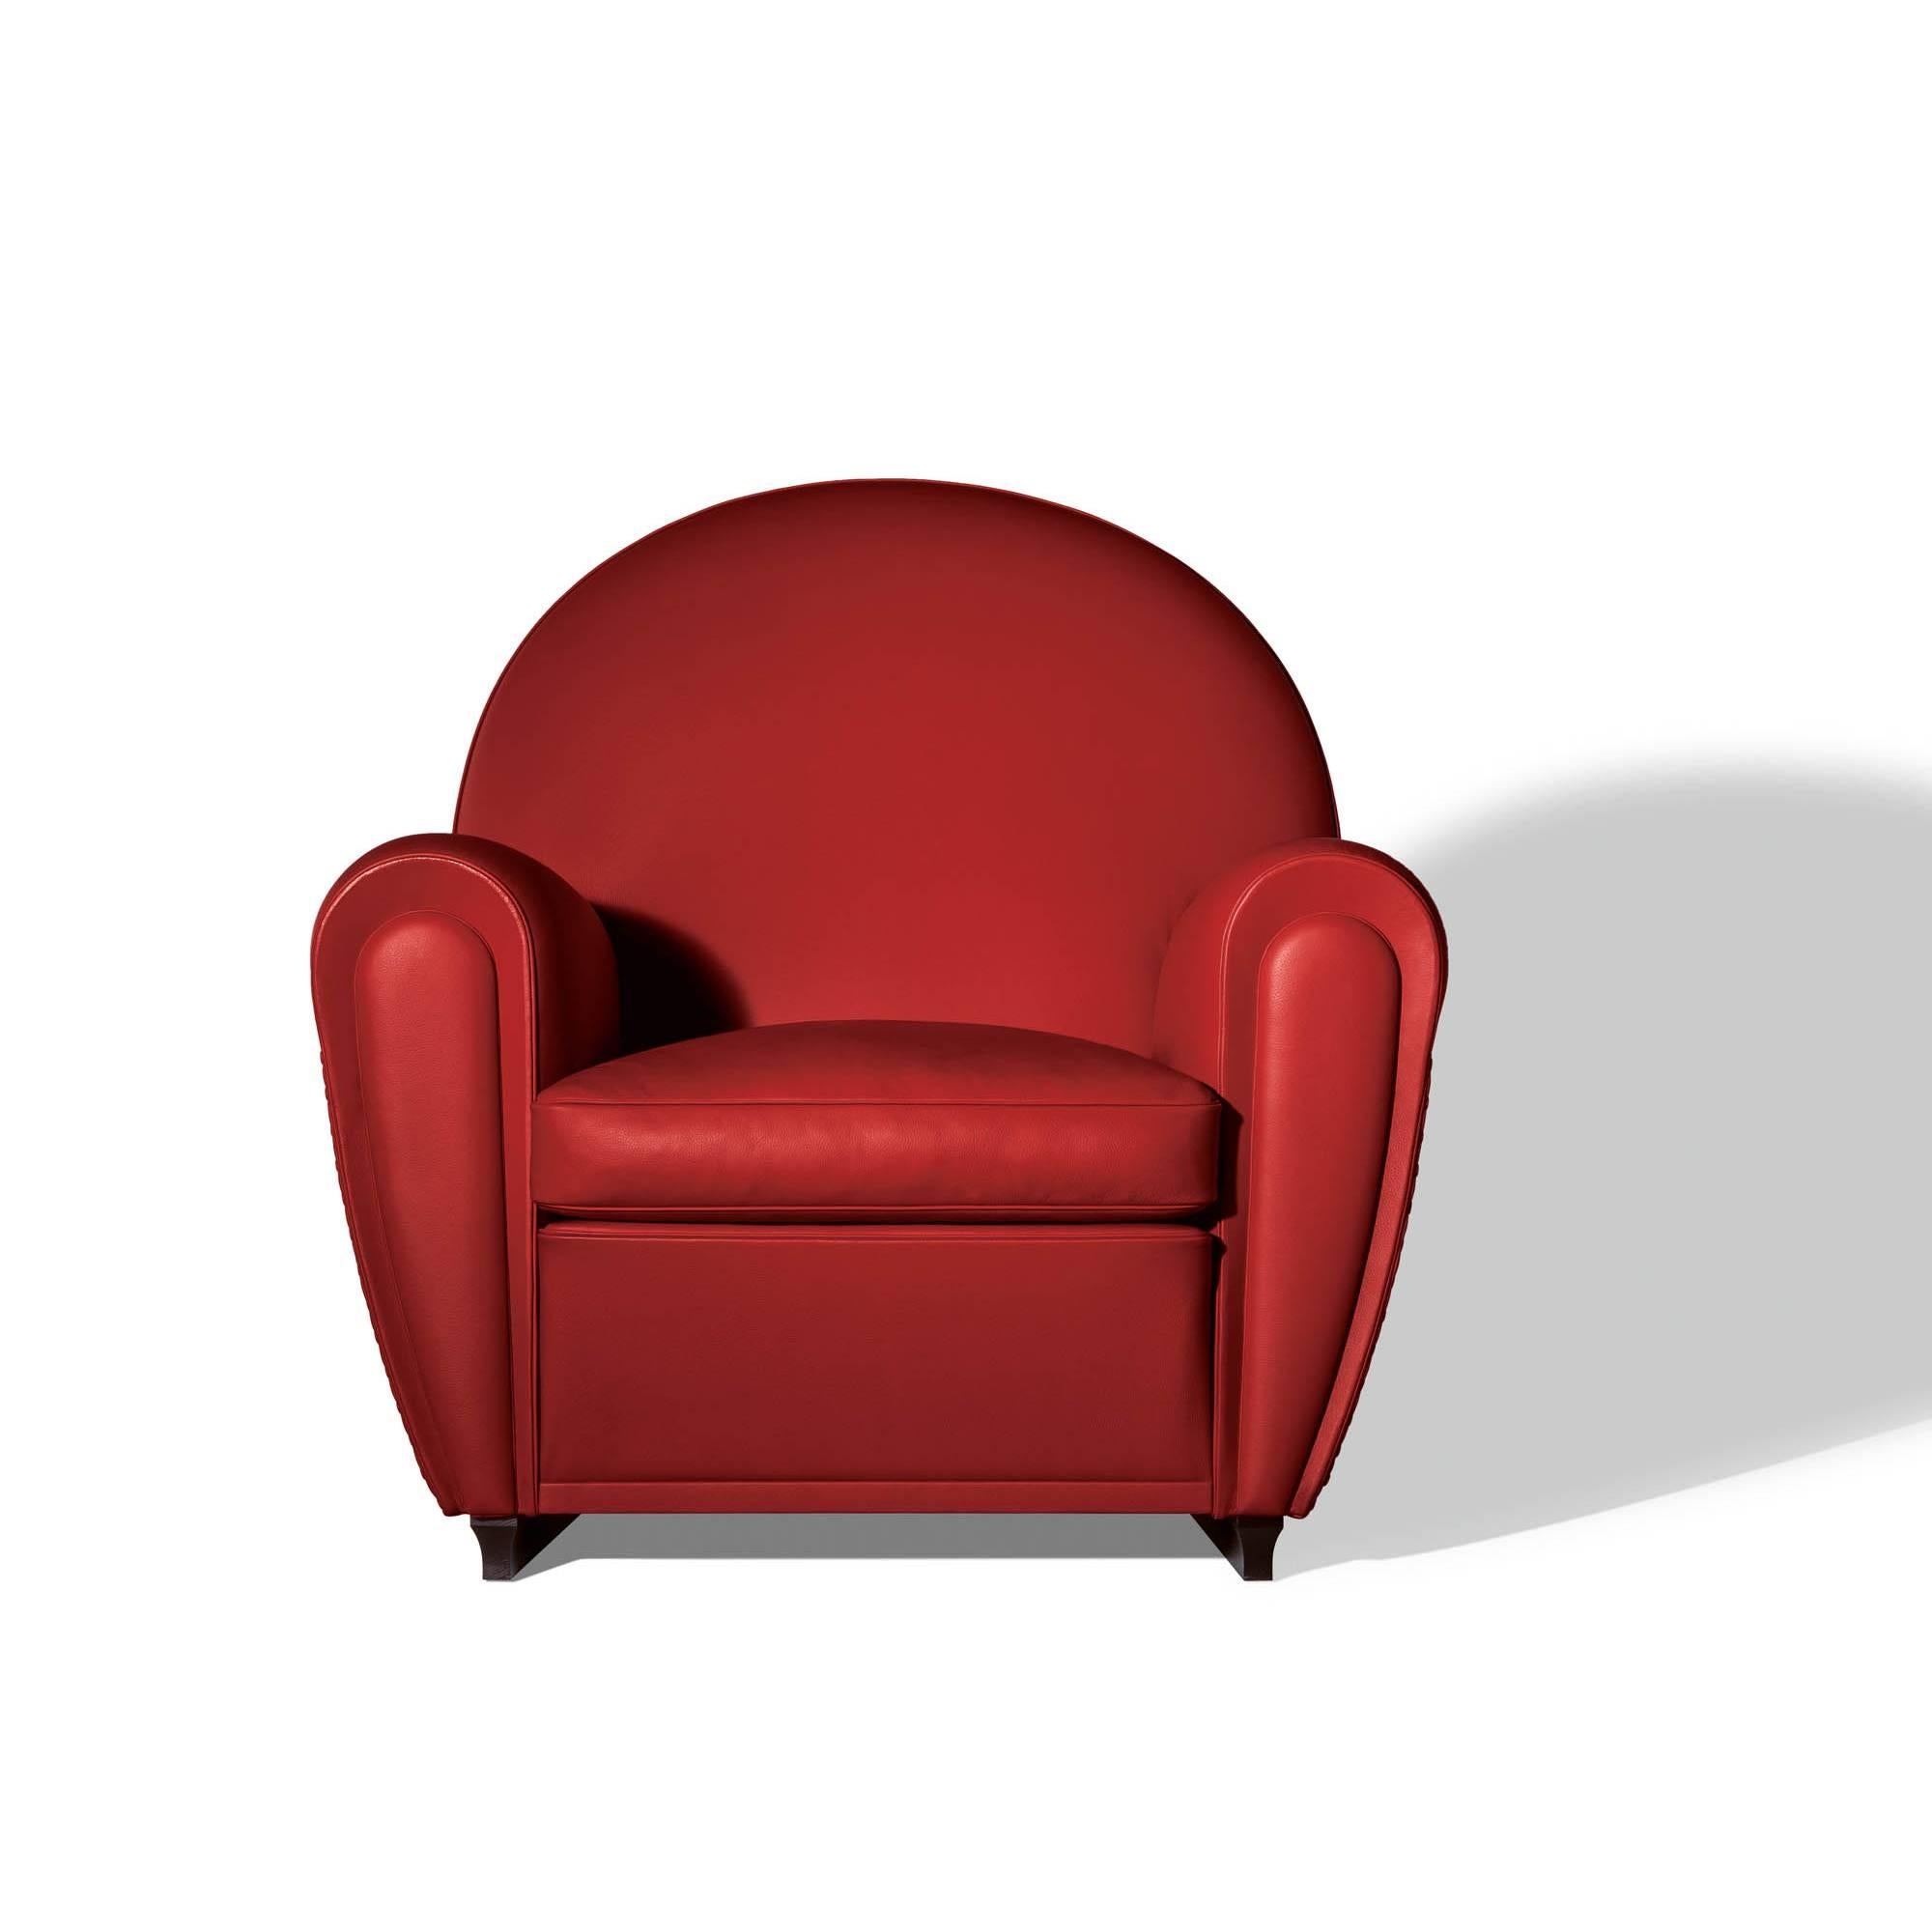 Le produit le plus emblématique de l'entreprise, le fauteuil Vanity Fair, incarne toutes les valeurs d'élégance intemporelle, de matériaux de qualité et de savoir-faire consommé qui ont fait la renommée de la marque Poltrona Frau au fil des ans.